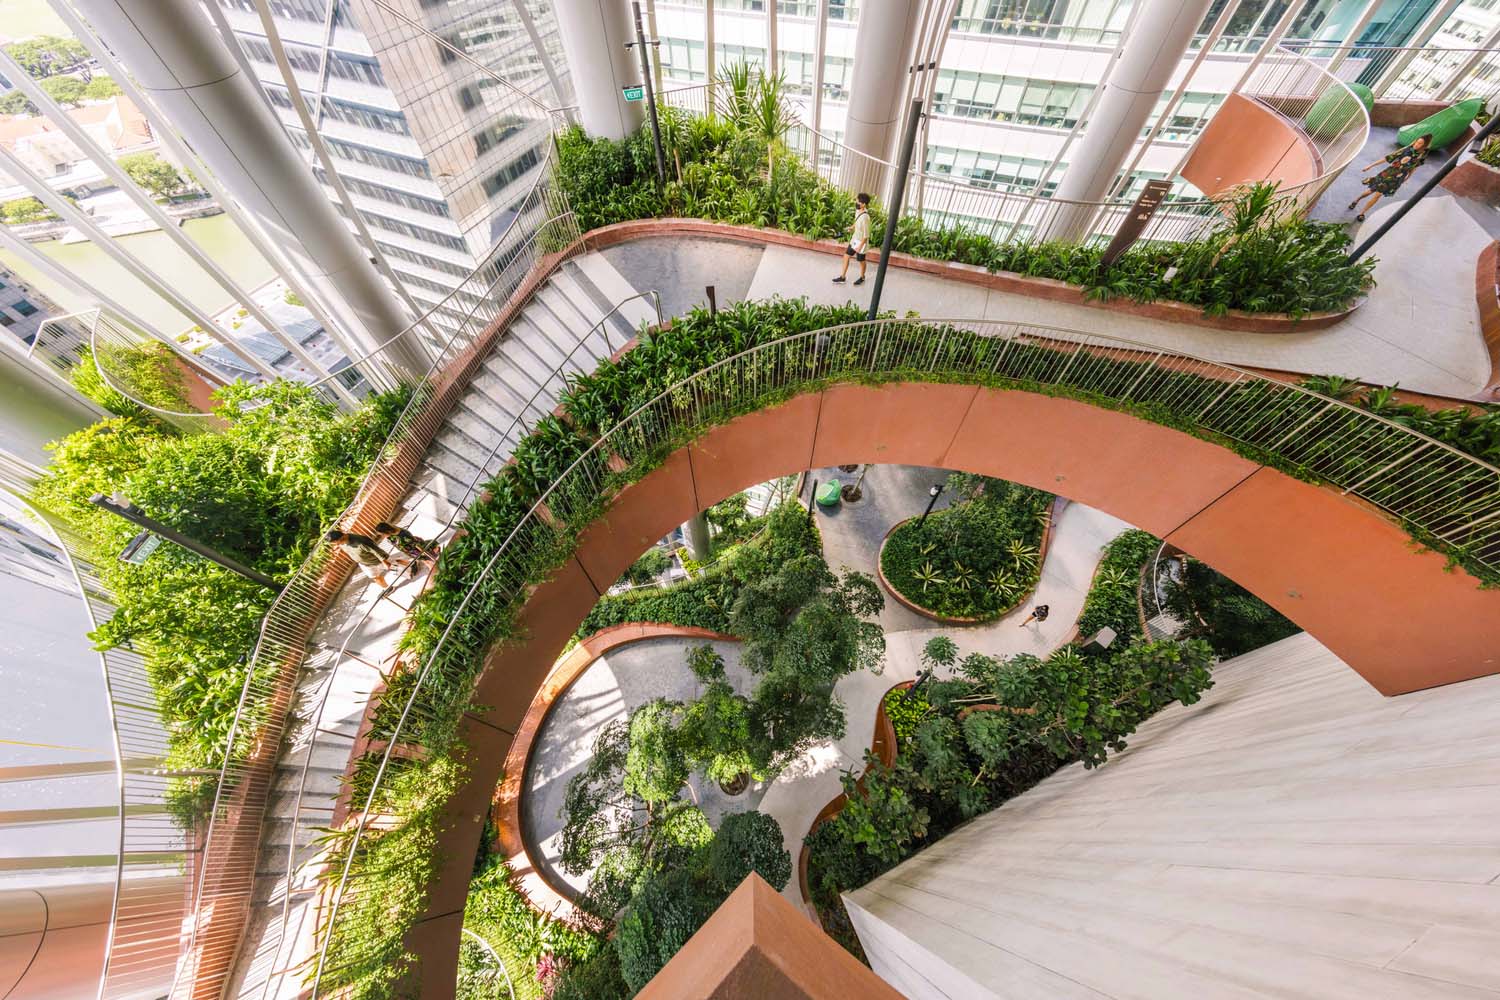 BIG,新加坡,CapitaSpring,高層綠洲,辦公樓,Carlo Ratti Associati,花園城市,高層建築,建築設計